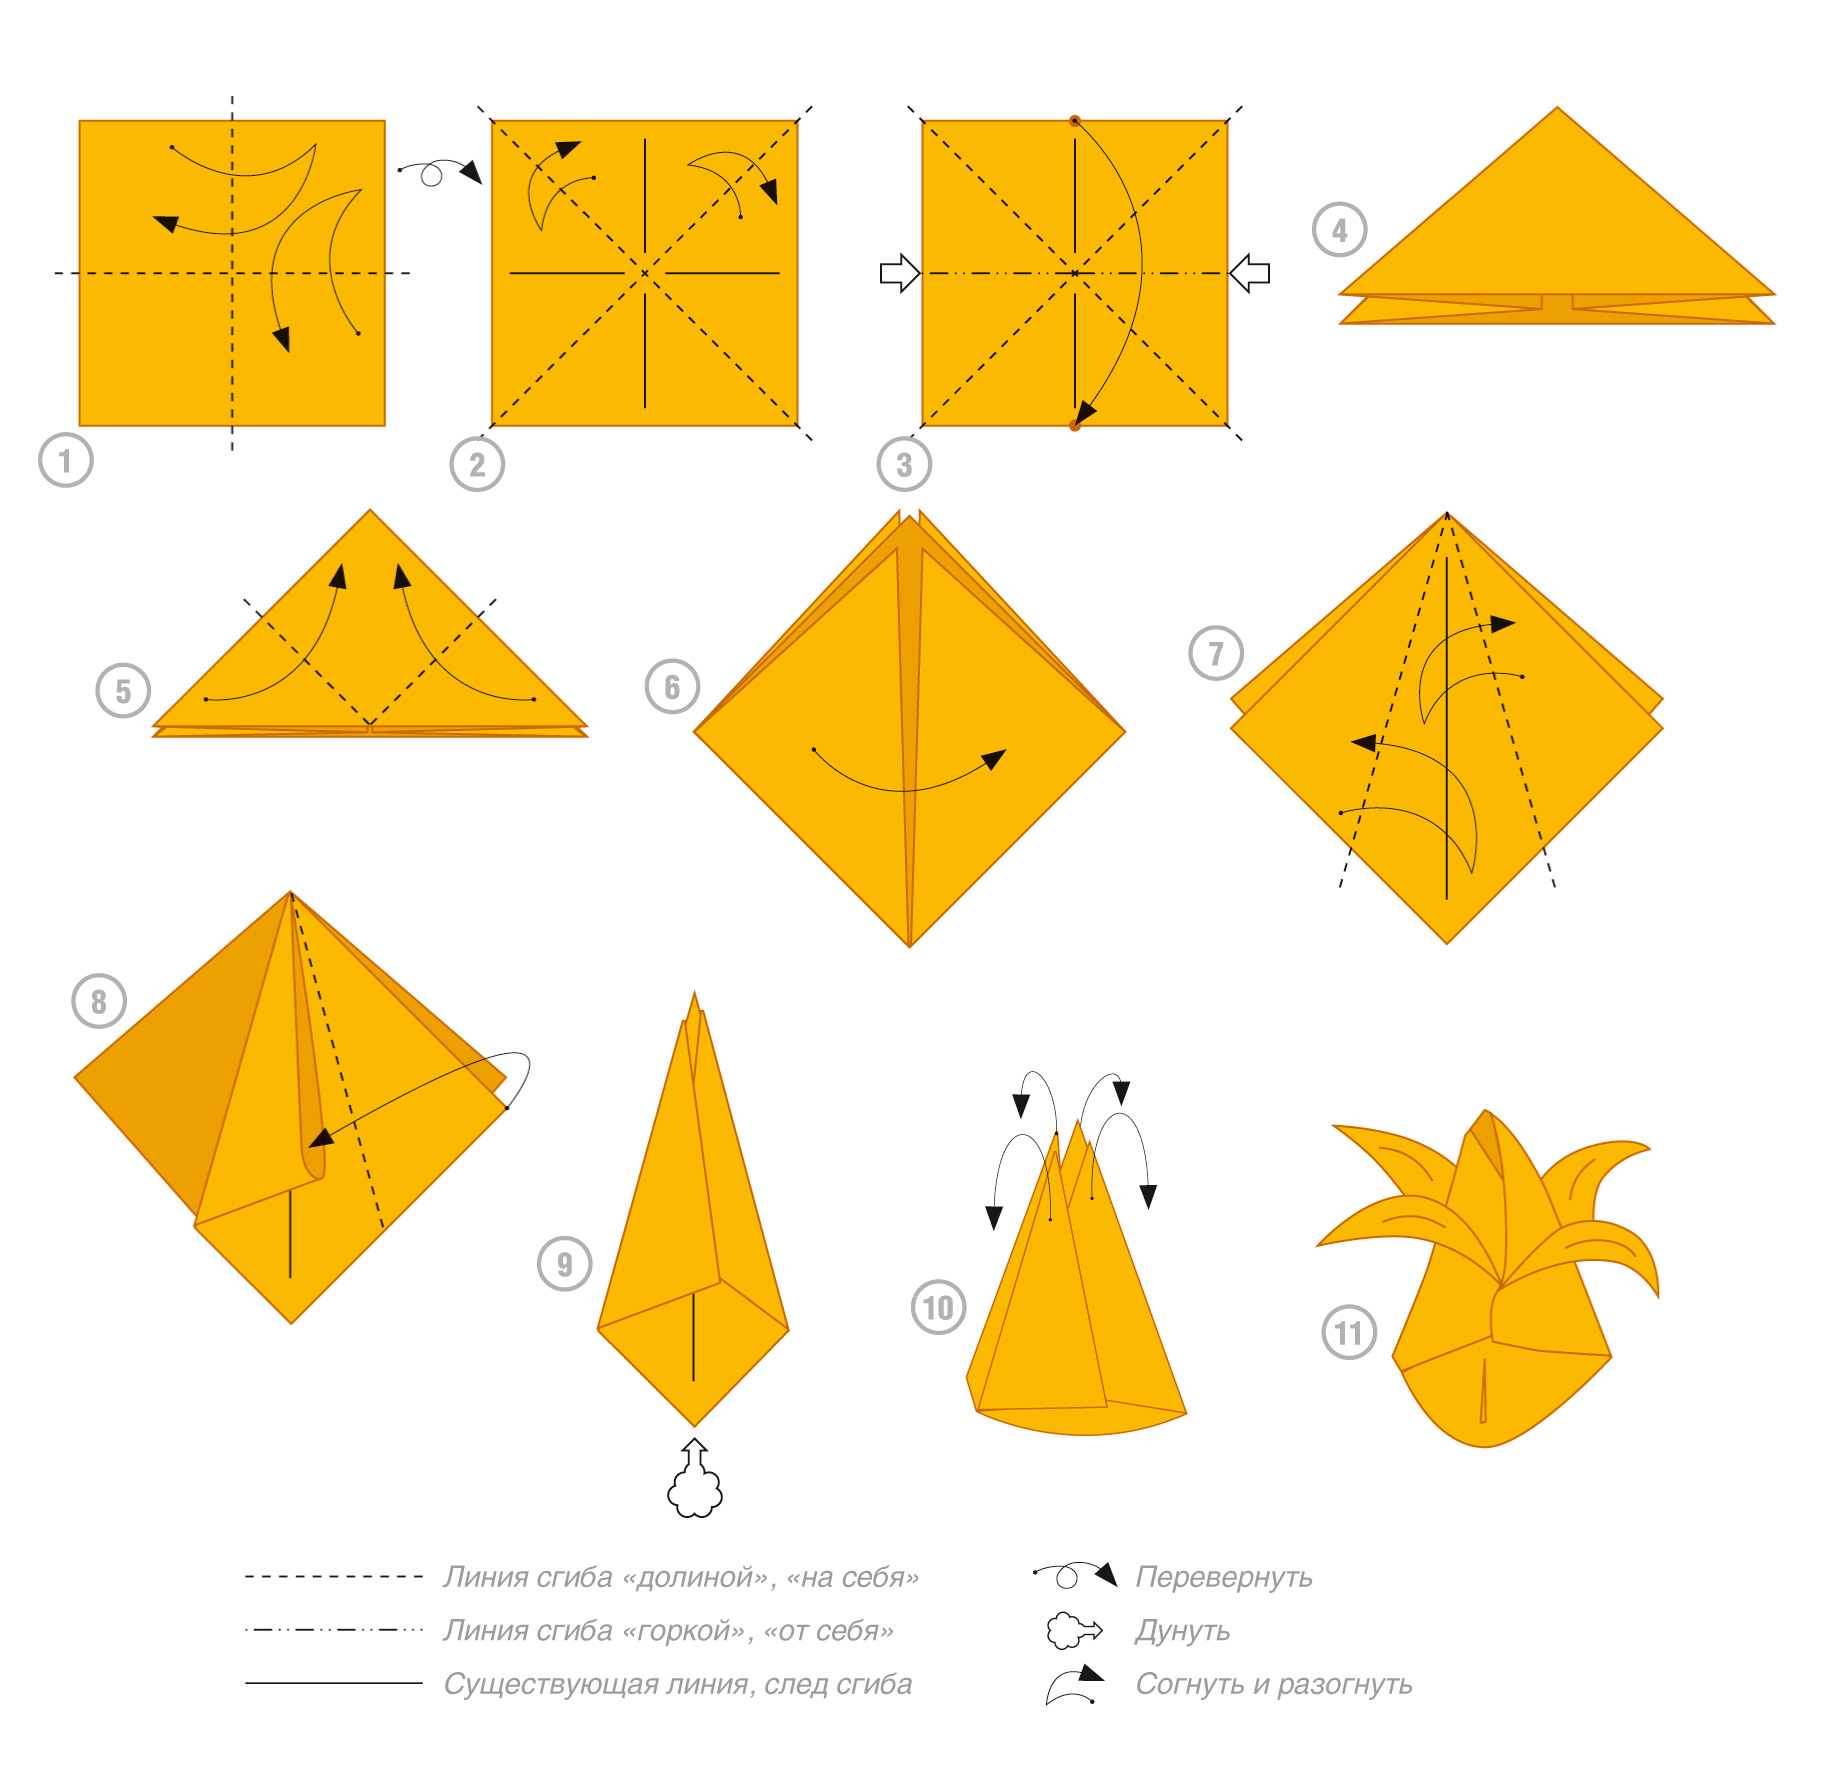 Тюльпан из бумаги оригами схема складывания пошагово